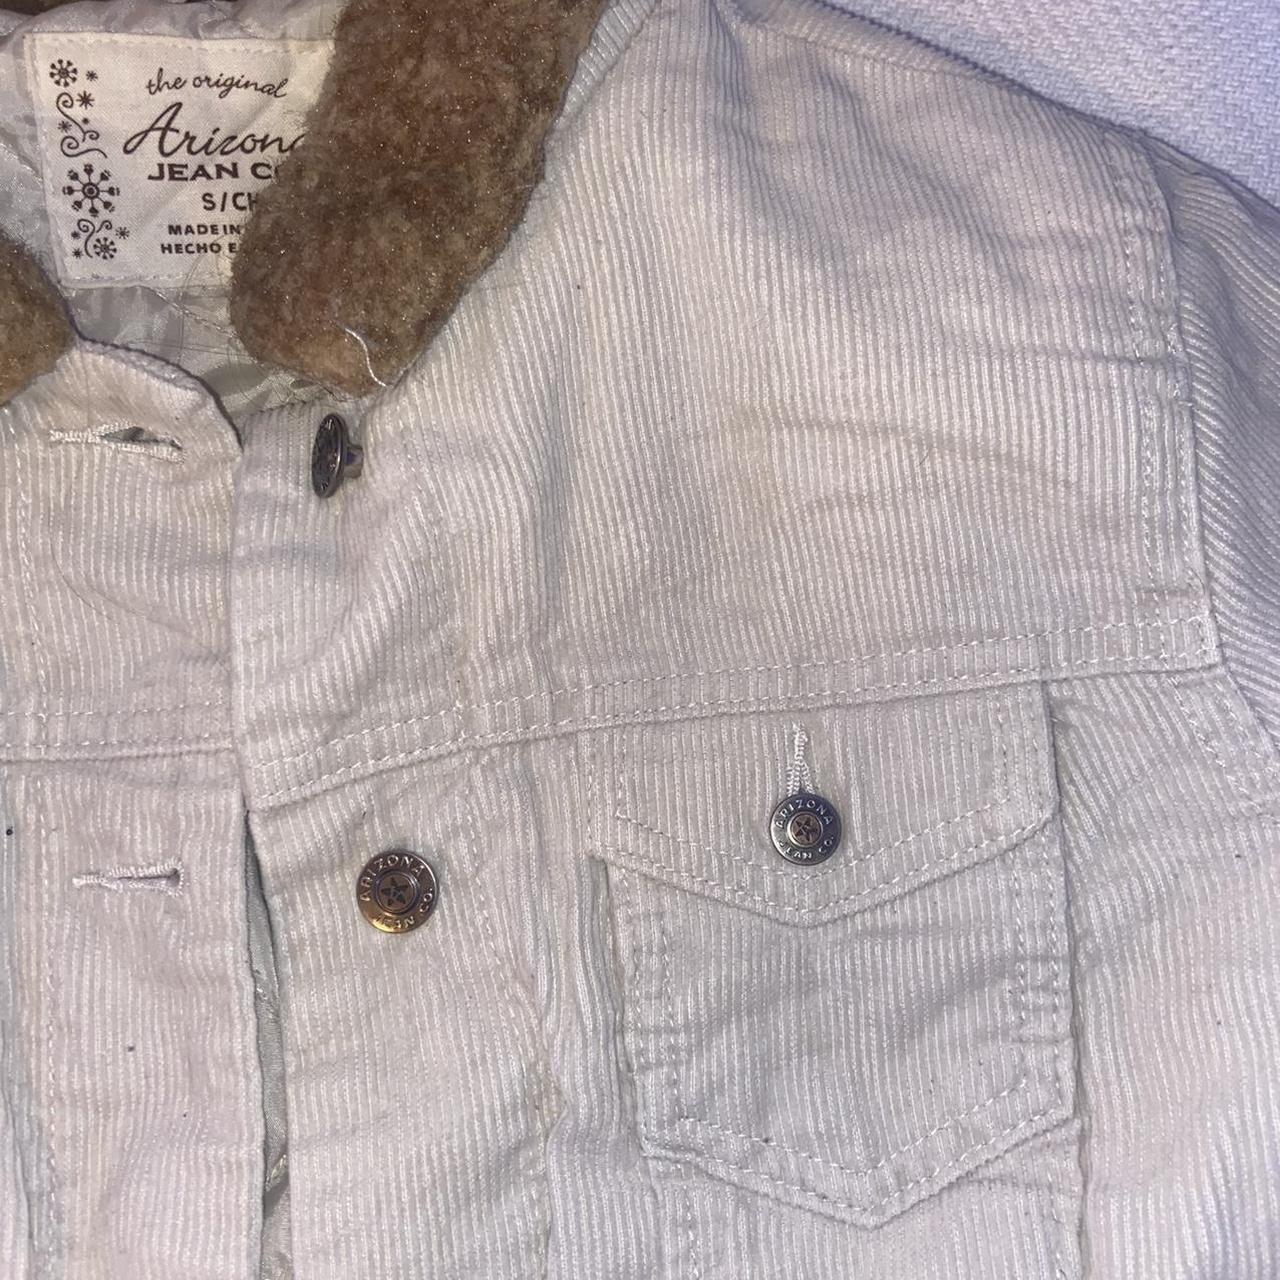 Product Image 3 - Arizona jeans jacket. Corduroy jacket